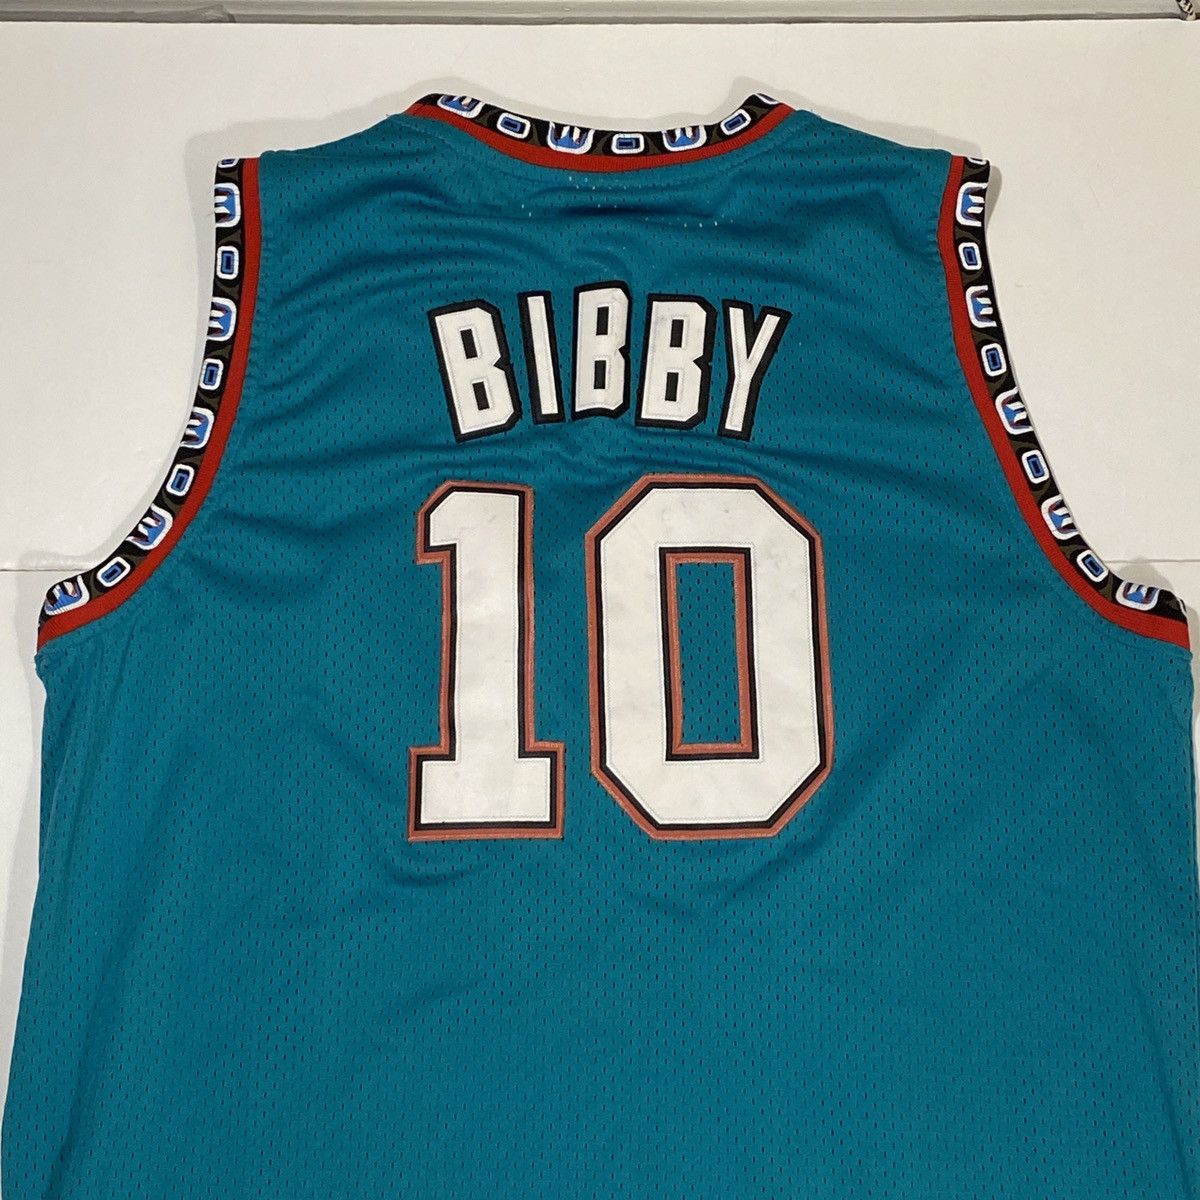 Vintage Vintage NBA Grizzlies Mike Bibby Jersey Size US XL / EU 56 / 4 - 4 Preview